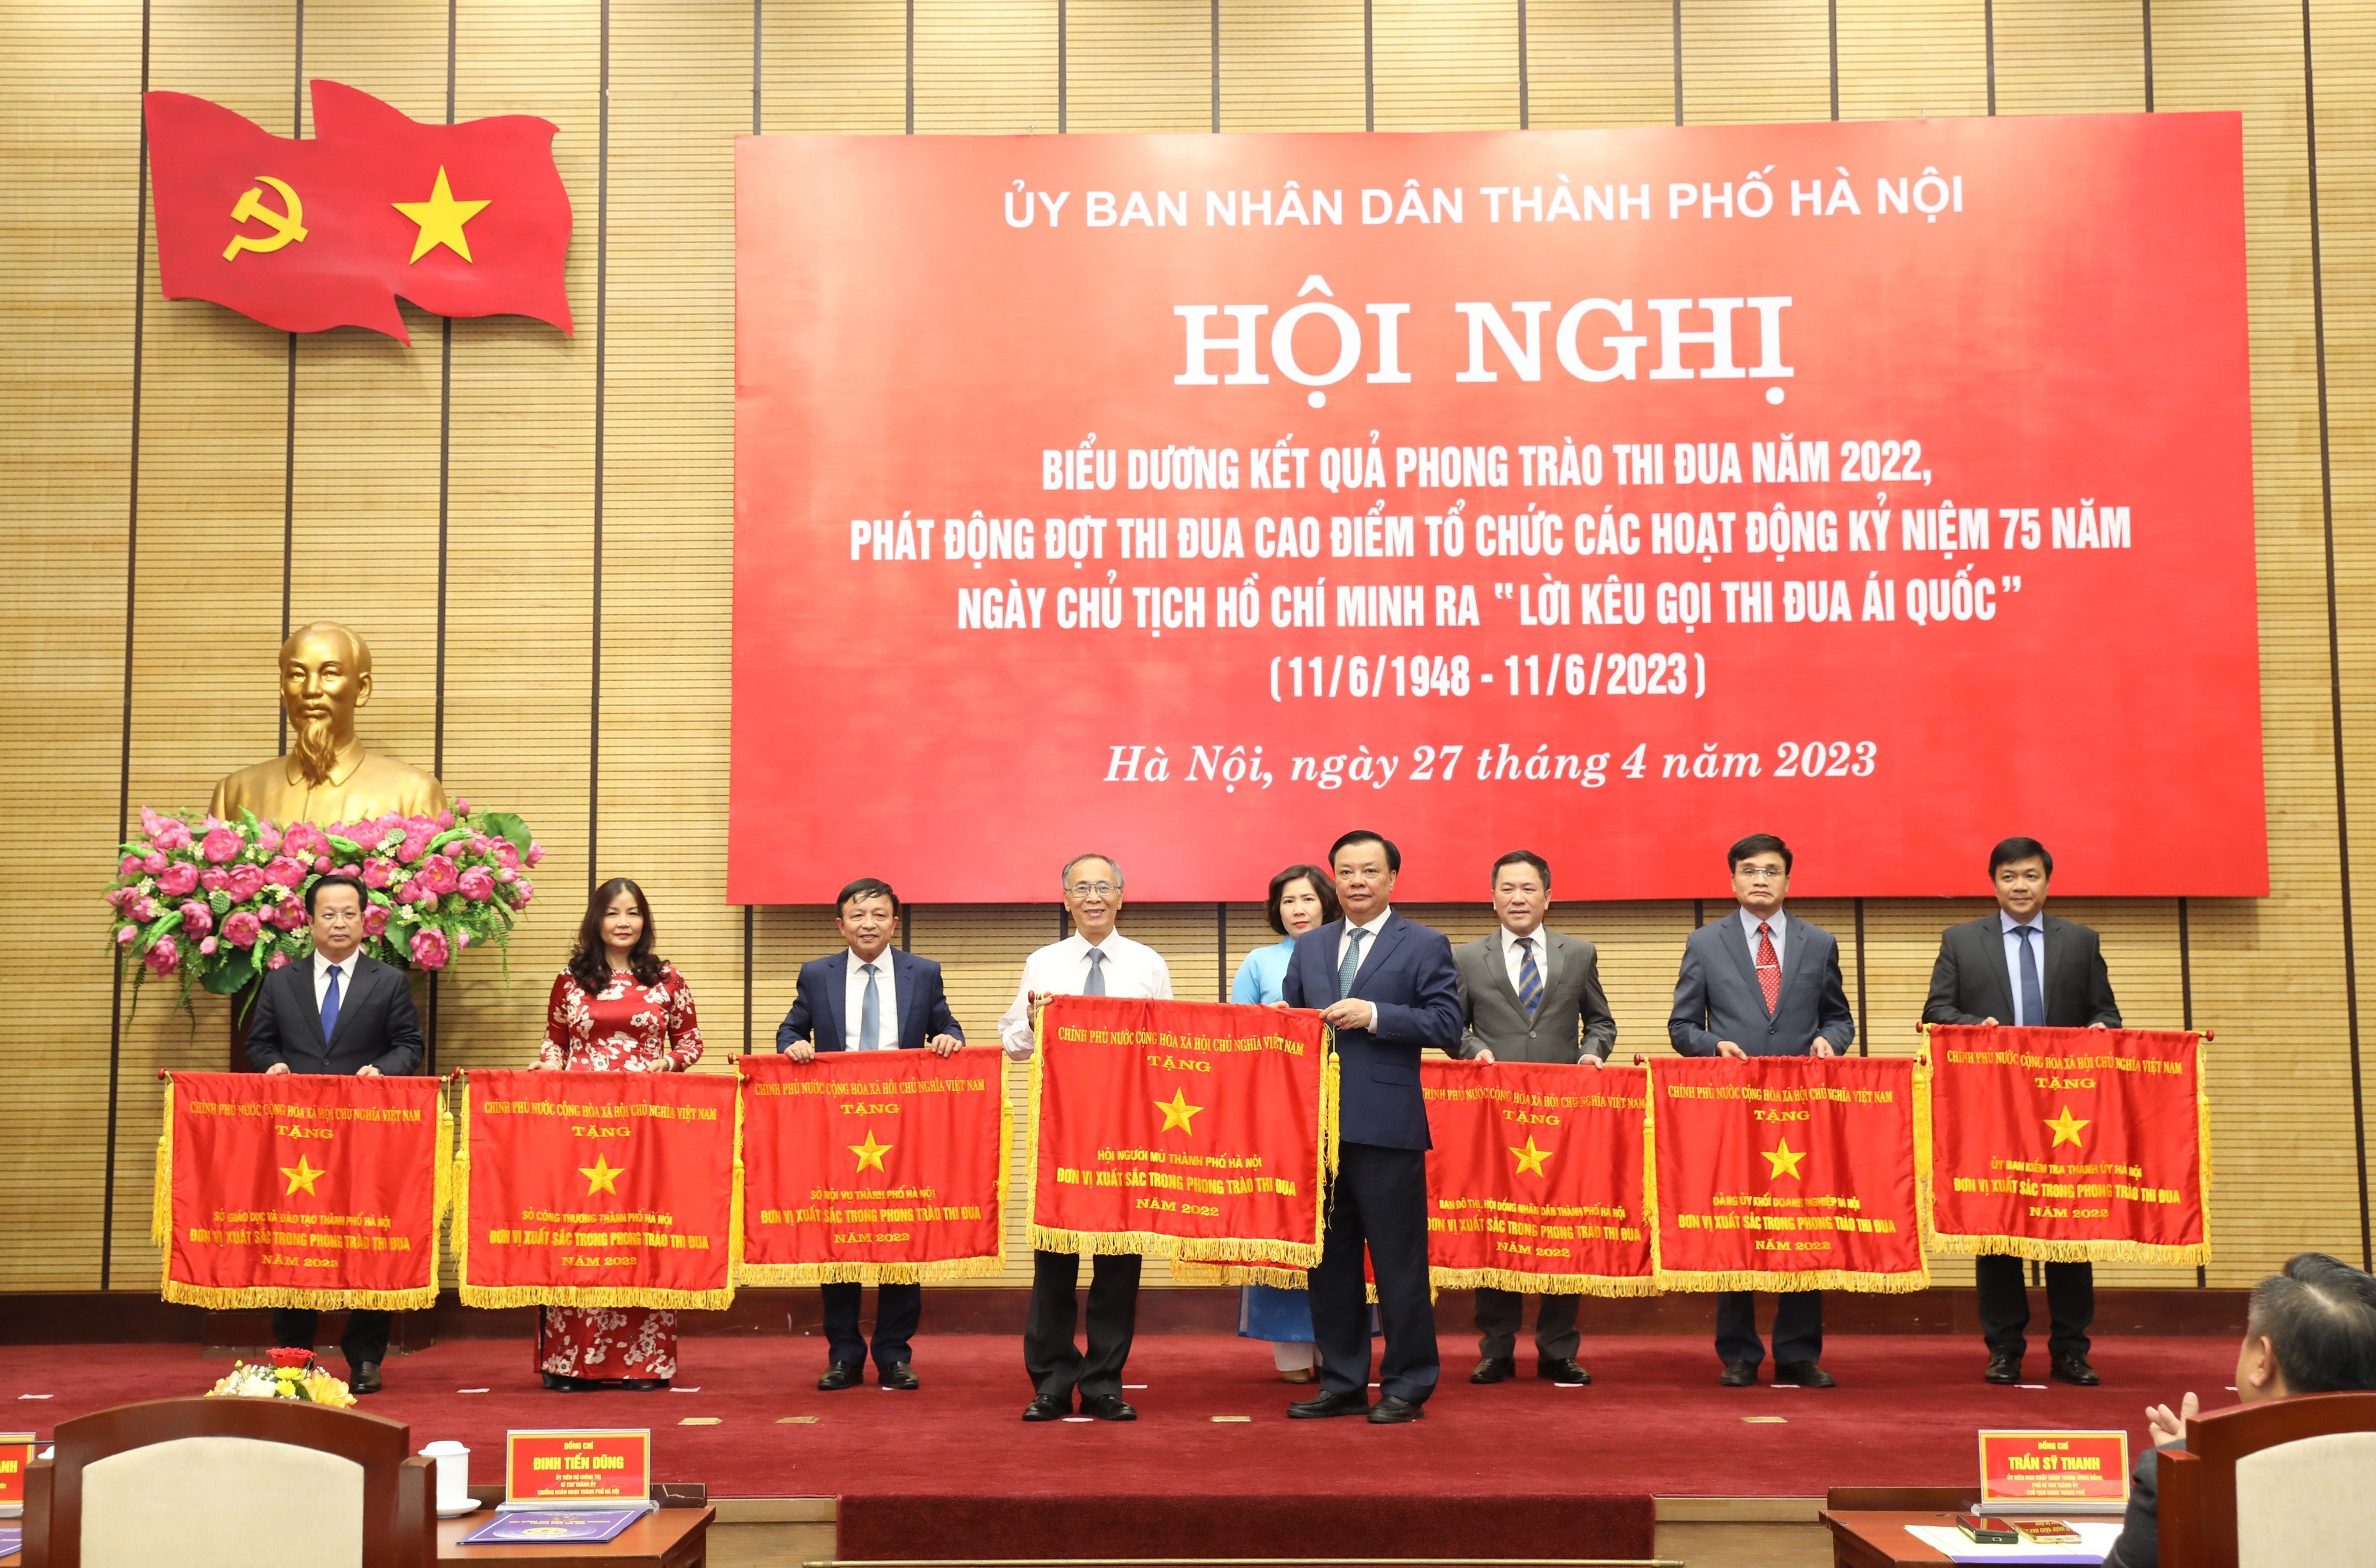 Hội Người mù thành phố Hà Nội vinh dự nhận Cờ thi đua của Chính phủ tặng đơn vị xuất sắc trong phong trào thi đua năm 2022